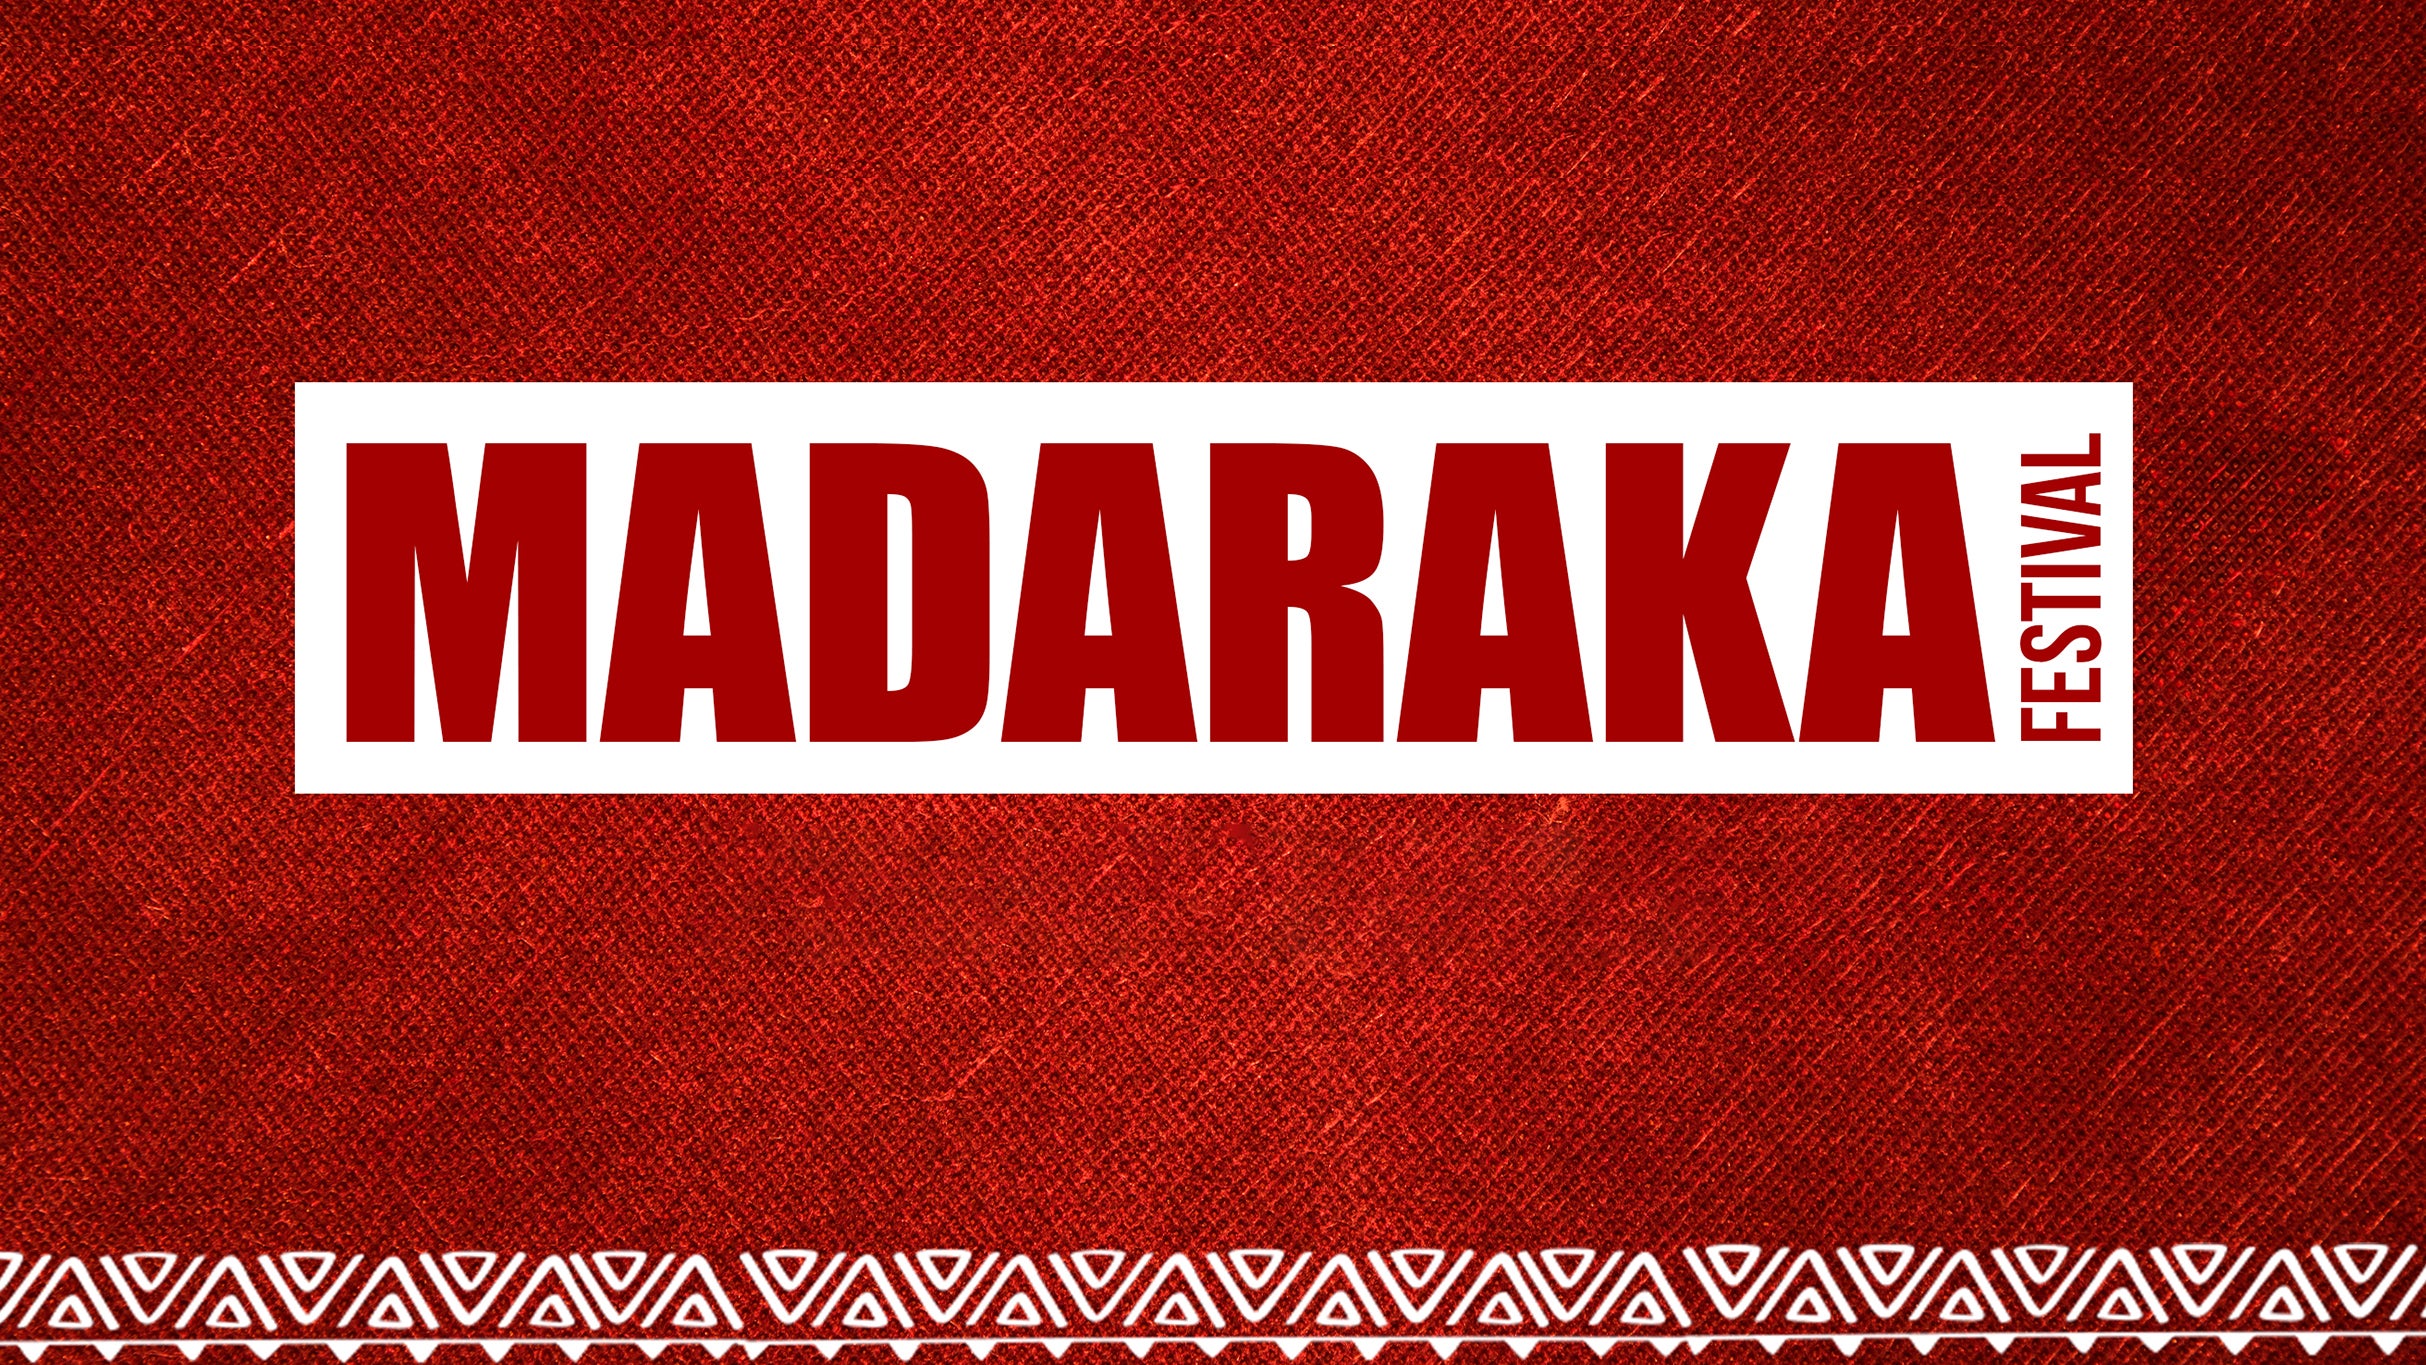 Madaraka Festival Featuring Nyashinski, etc.